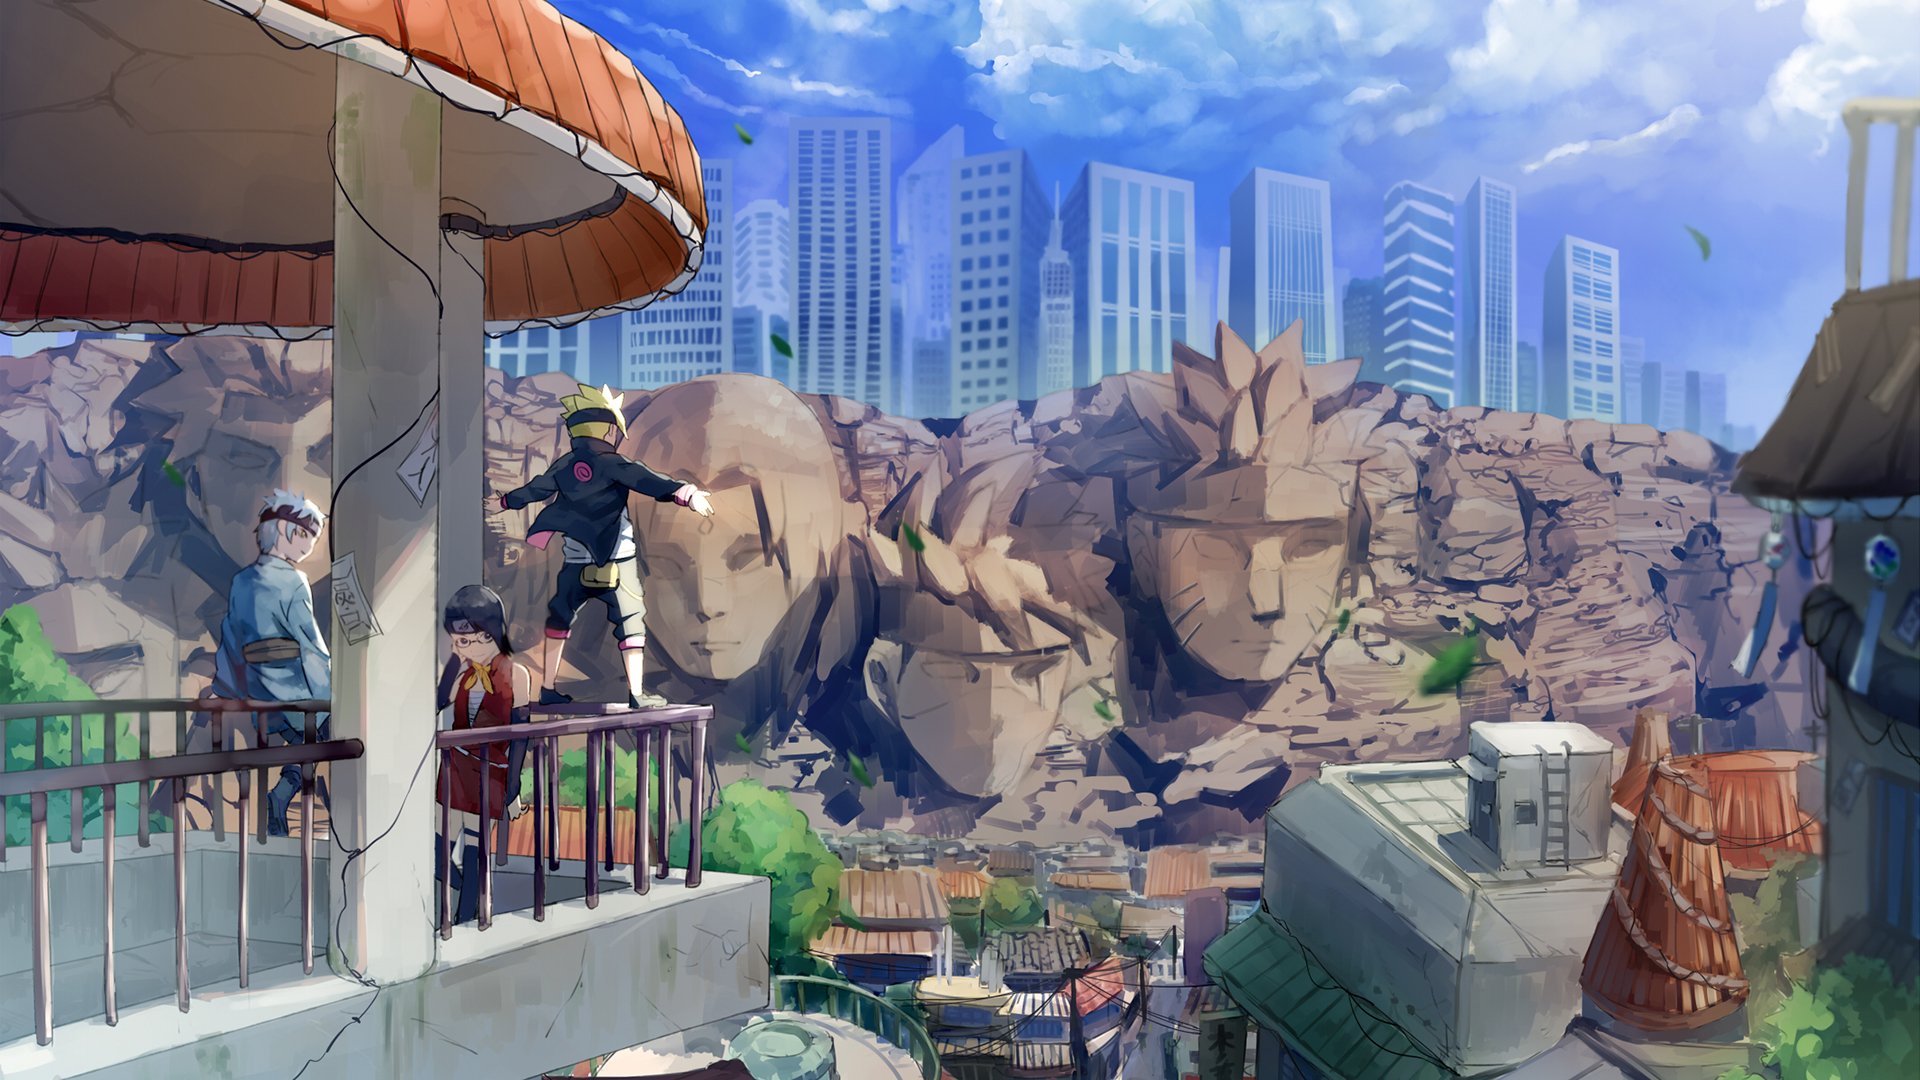 Naruto  Vila da Folha vai ser recriada em tamanho real no Japão